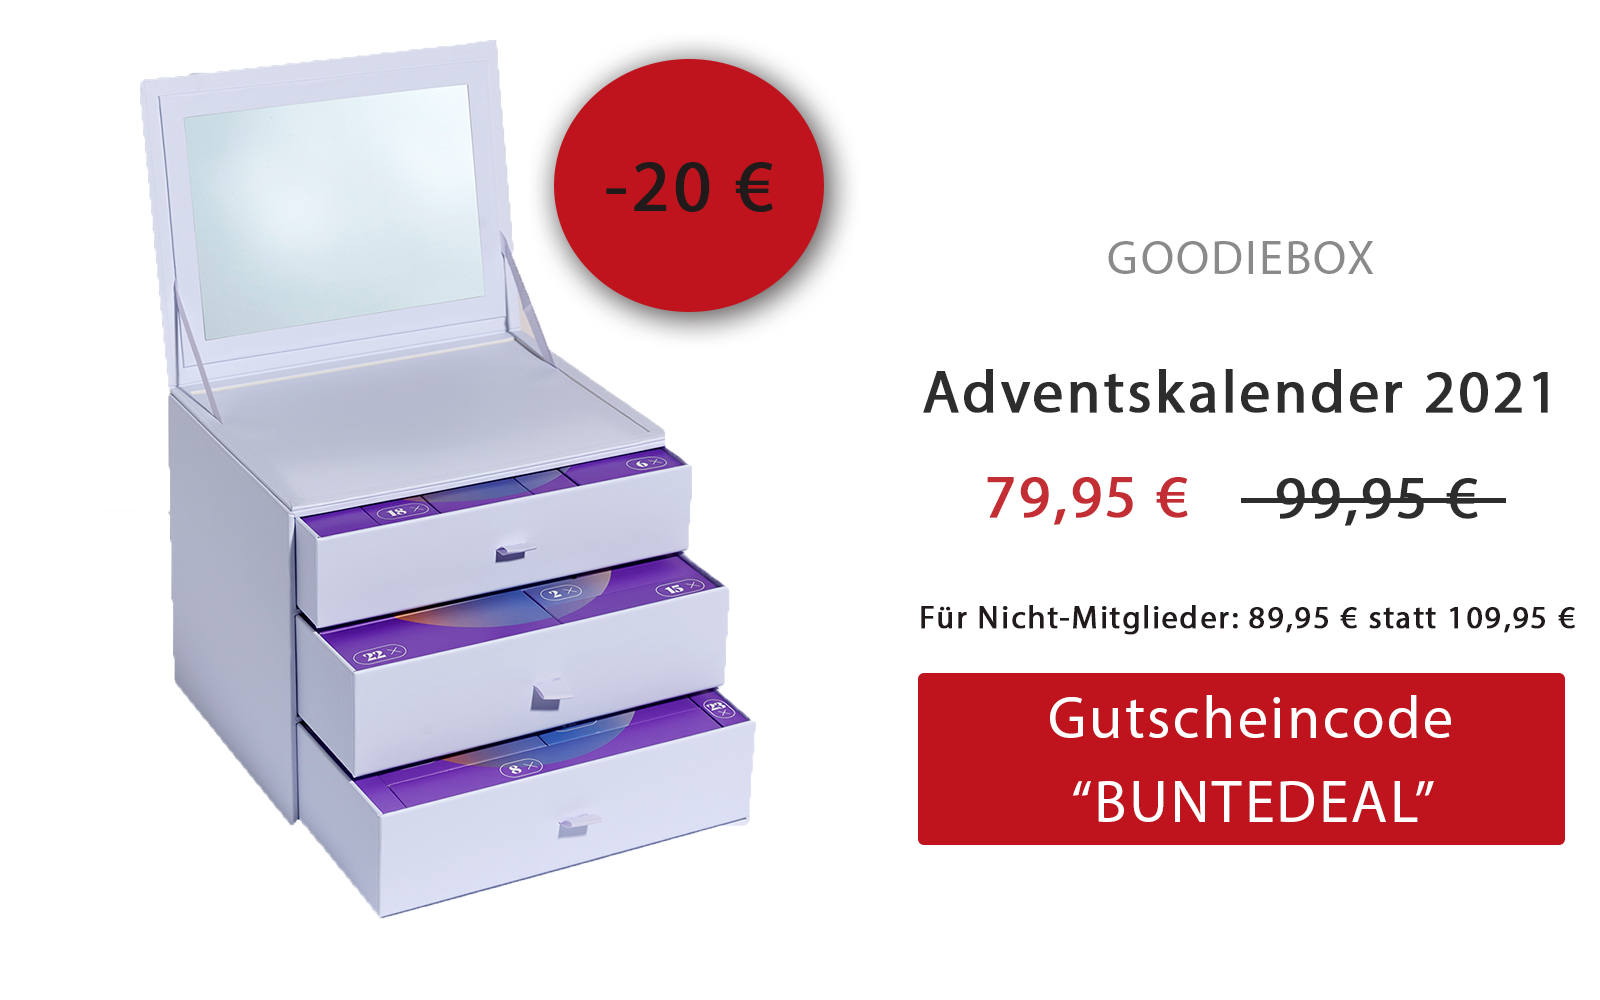 20 Euro Rabatt auf den Goodiebox Adventskalender